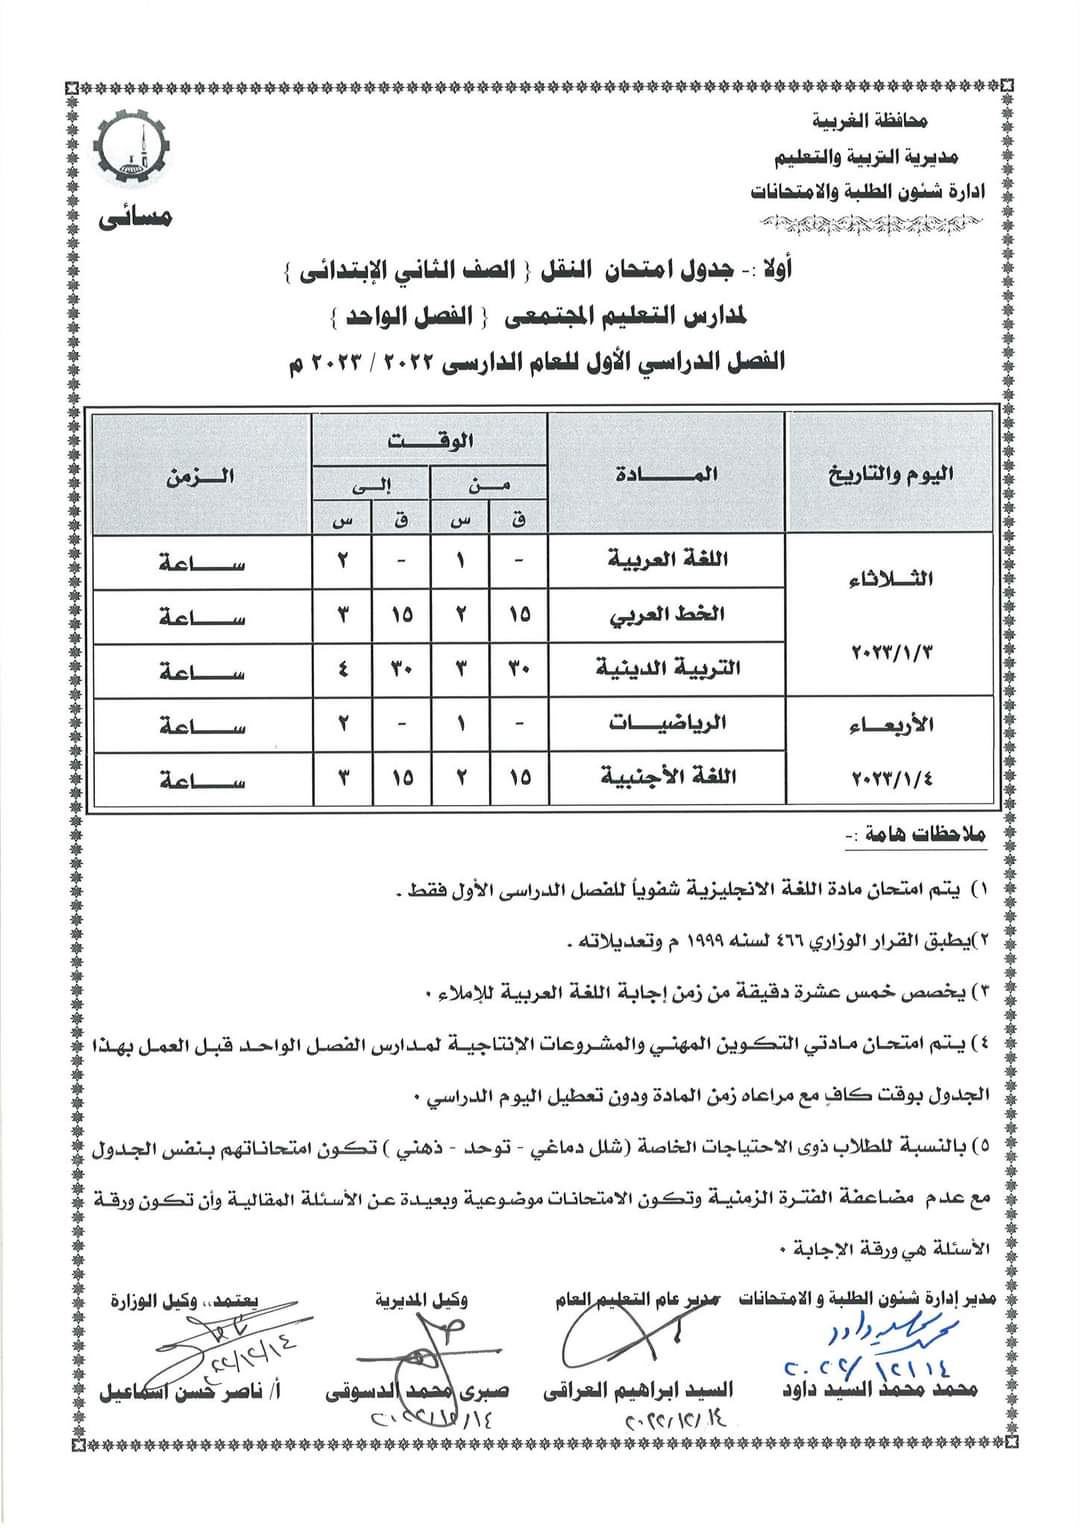 جداول امتحانات الفصل الدراسى الأول لصفوف النقل (2)